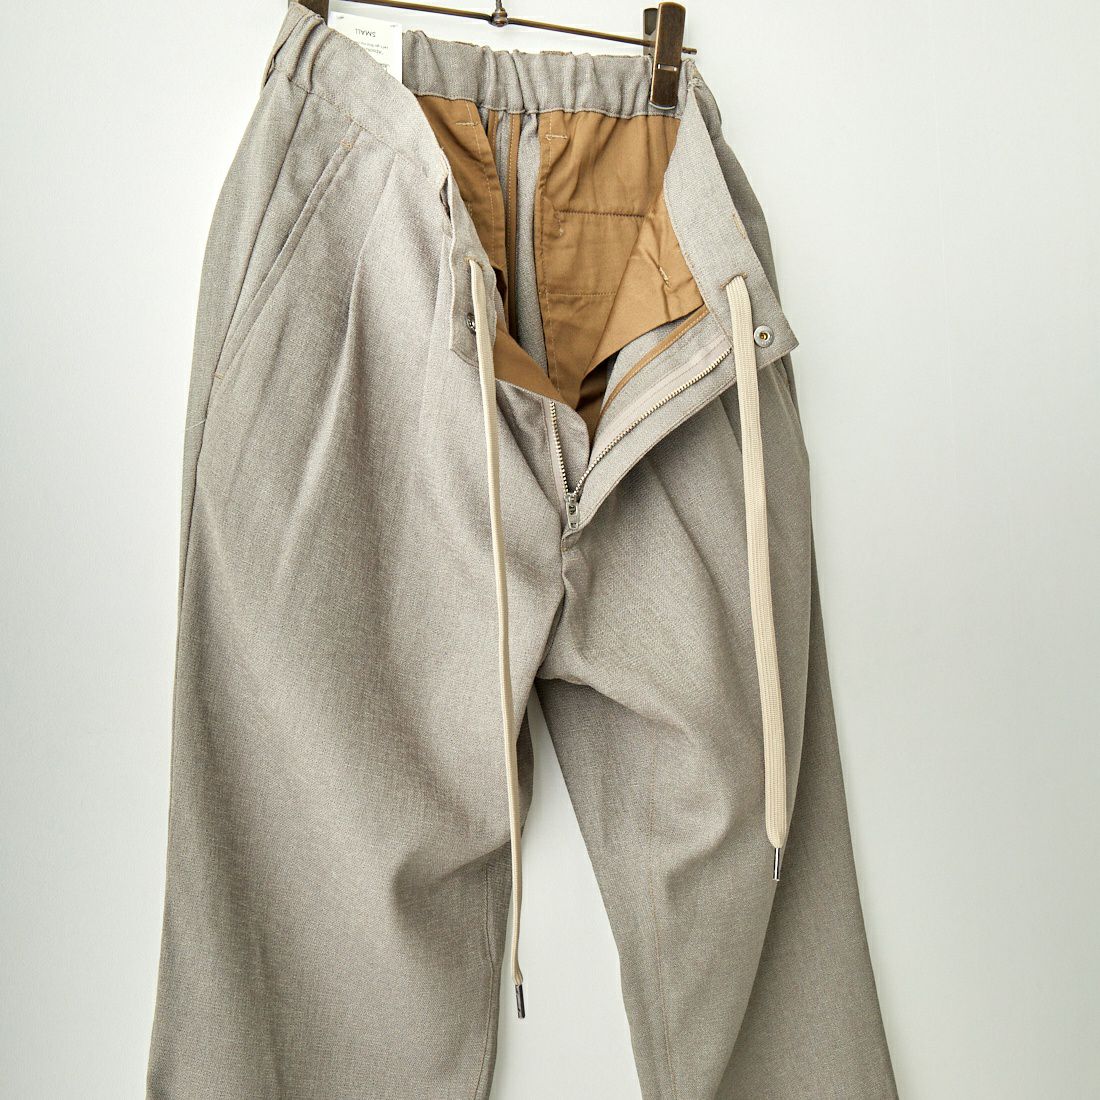 Jeans Factory Clothes [ジーンズファクトリークローズ] リスタビュール2Pワイドテーパードパンツ [JFC-232-014] BEIGE